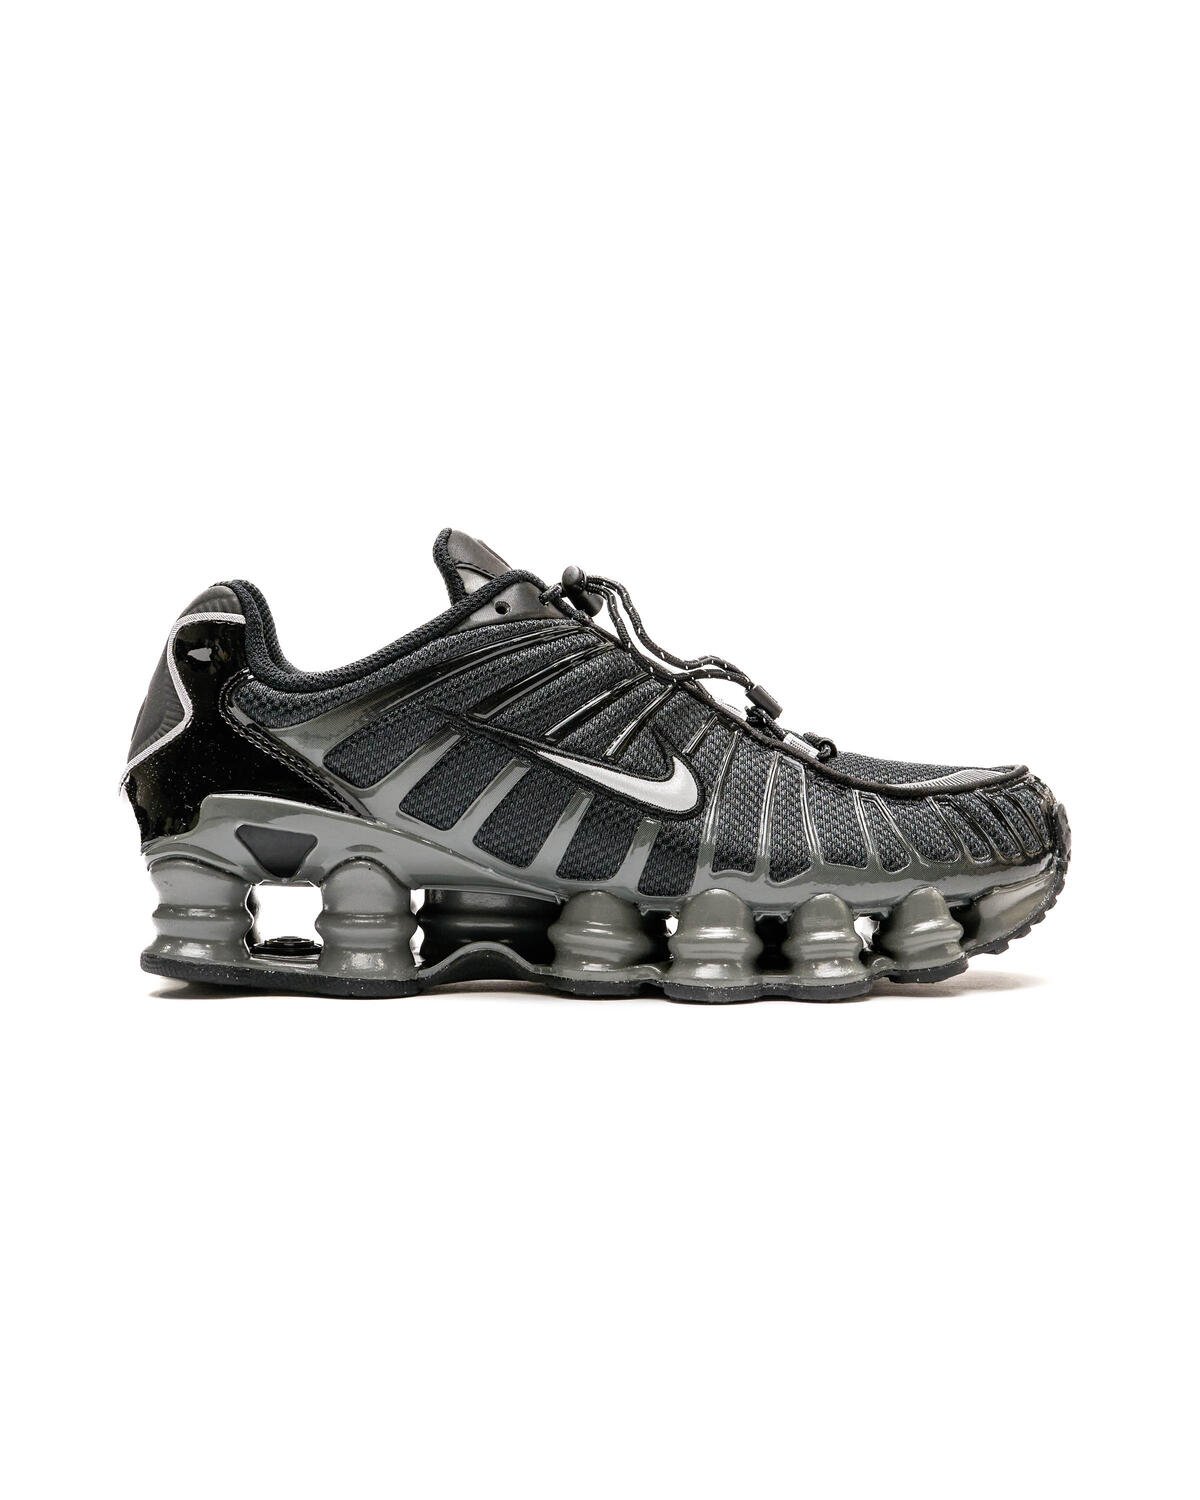 Nike Air Force 1 LV8 3 GS Wheat Flax Gum BQ5485-700 Size 6Y / Womens 7.5  Shoes